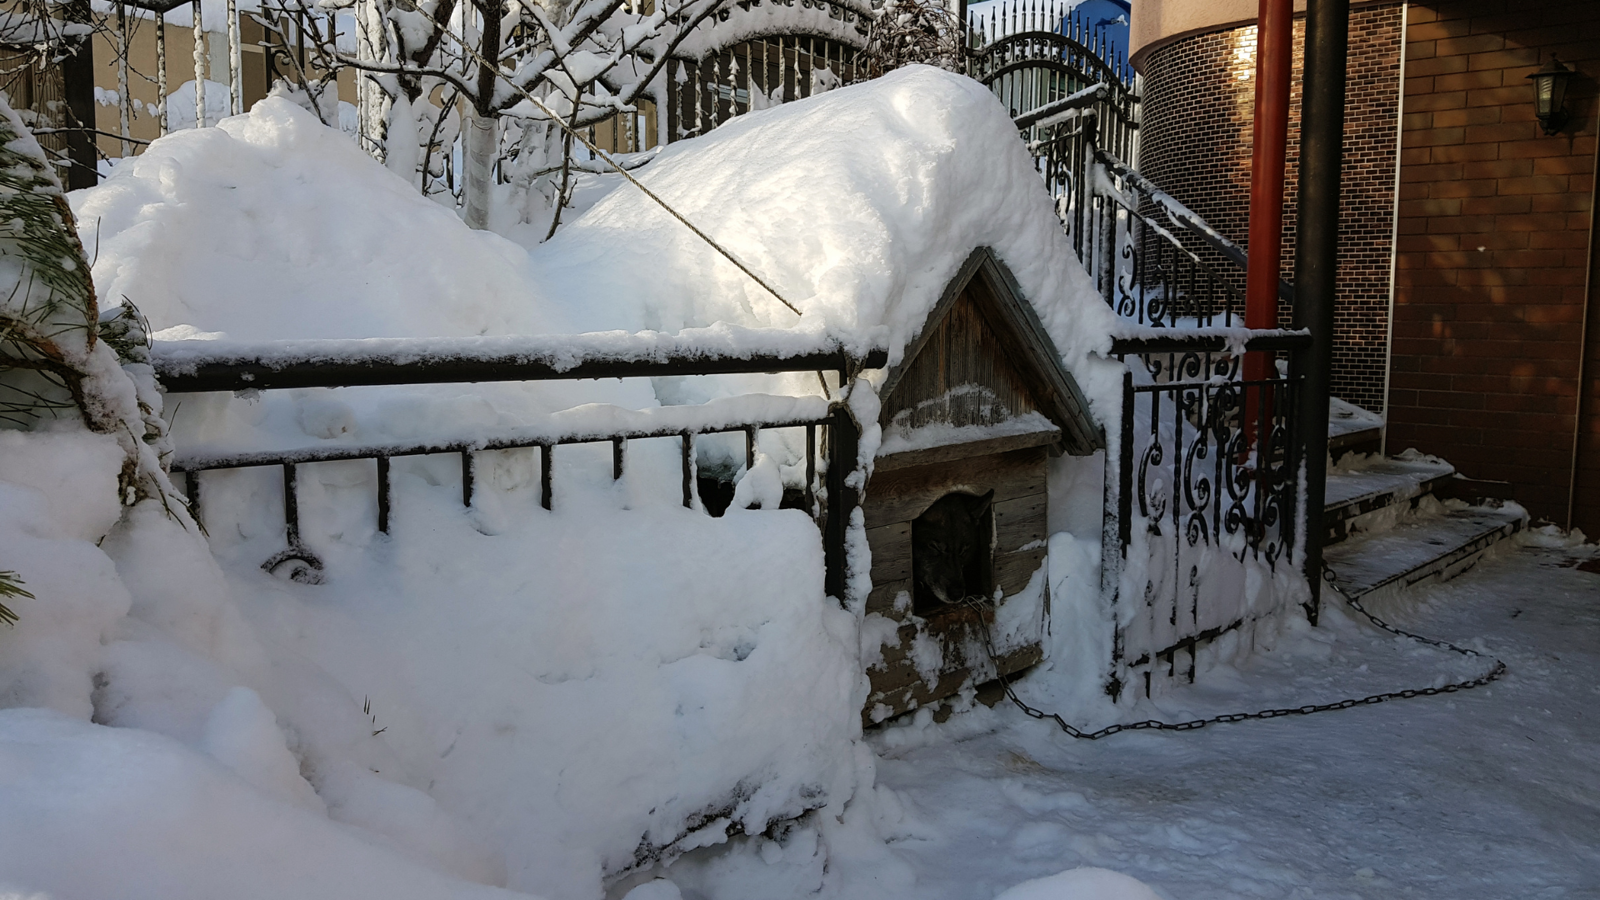 Drewniana buda pod domem przykryta grubą warstwą śniegu.